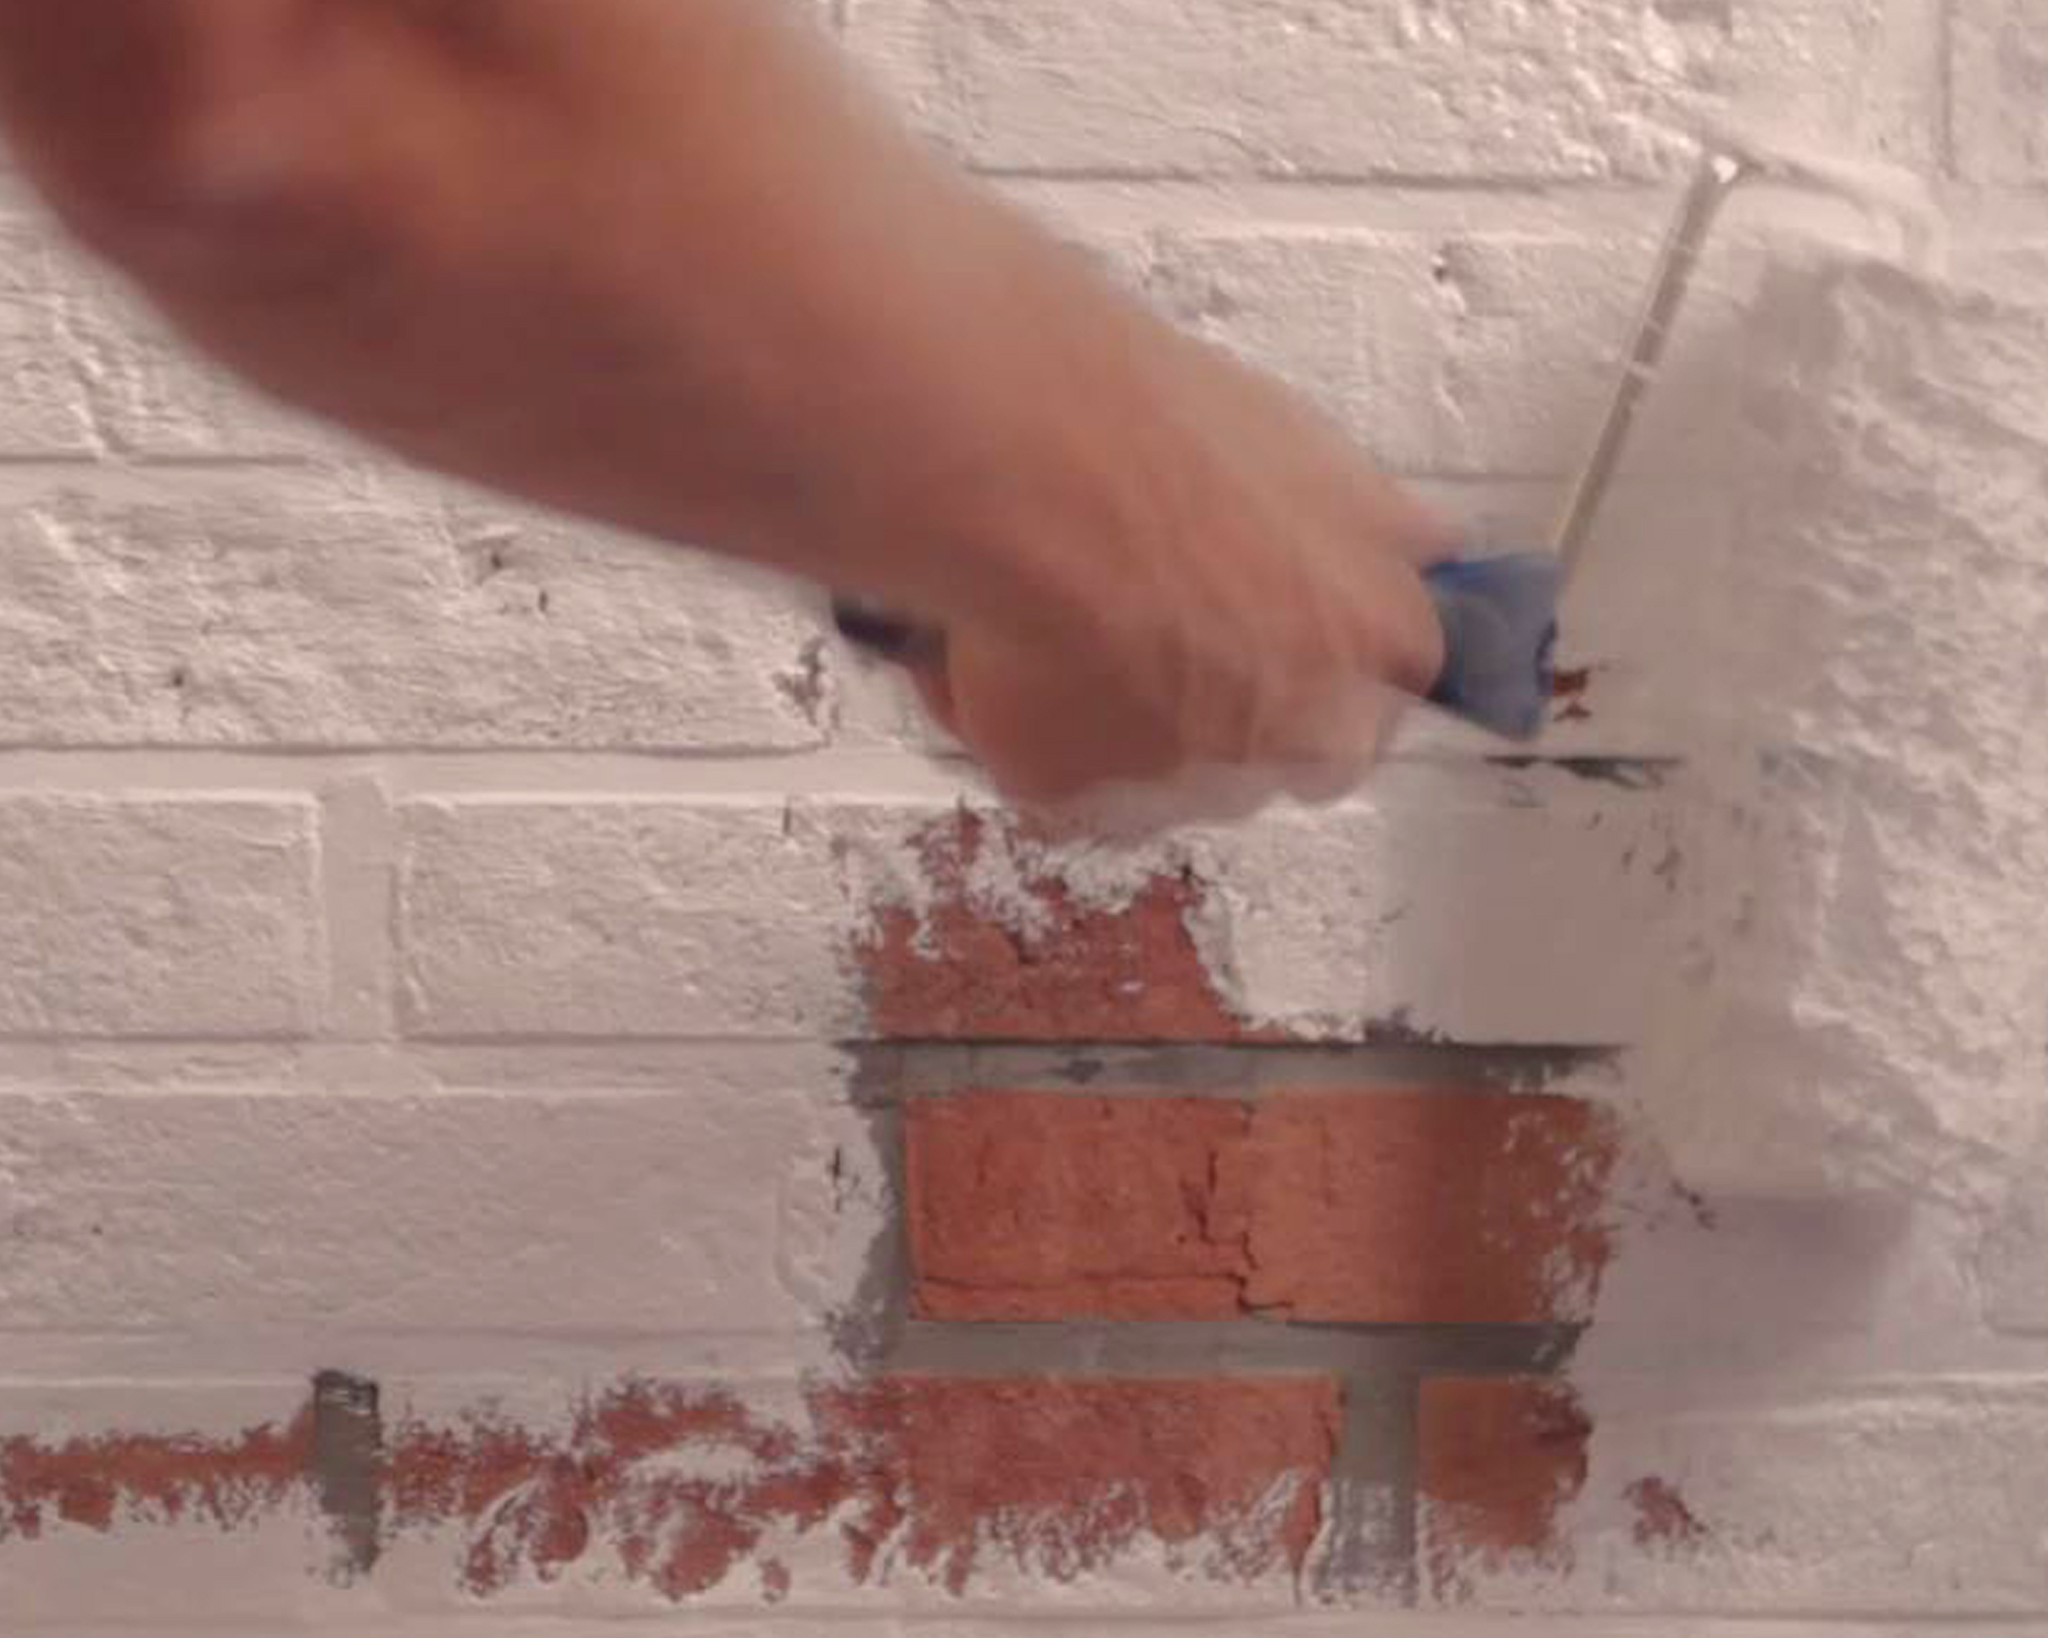 Comment obtenir du rouge brique en peinture